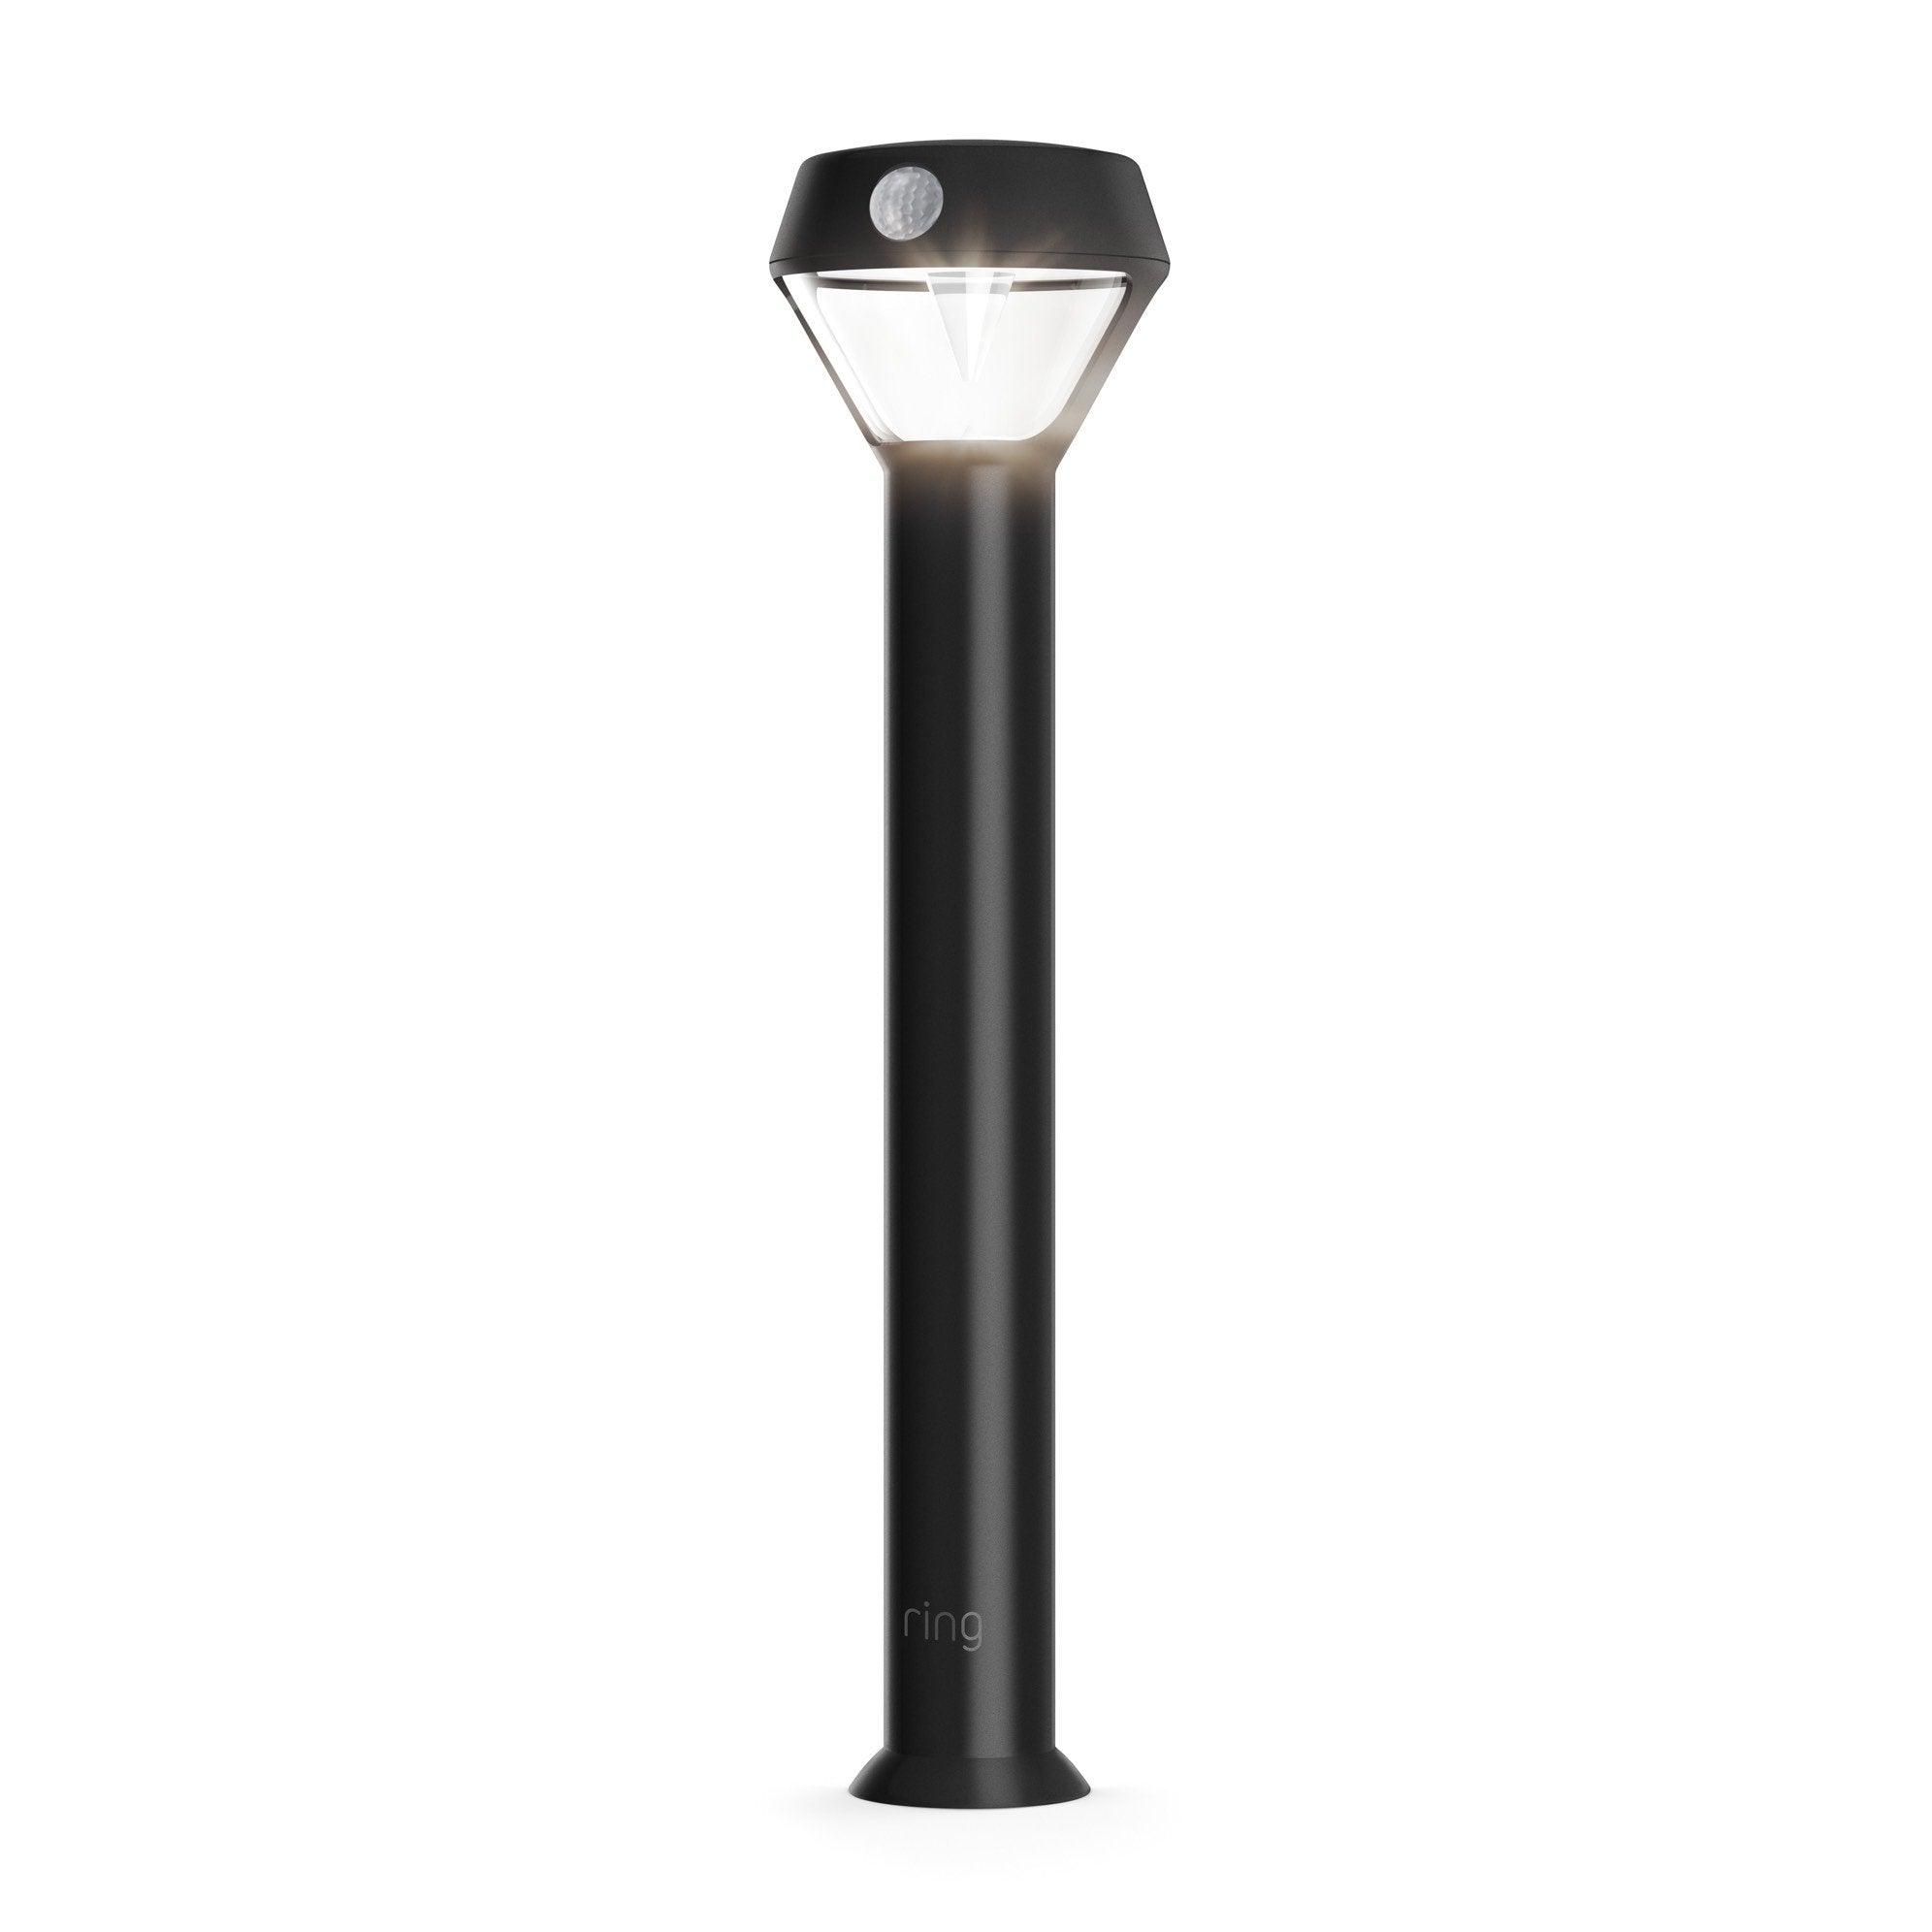 Smart Lighting Solar Pathlight - Black:Smart Lighting Solar Pathlight